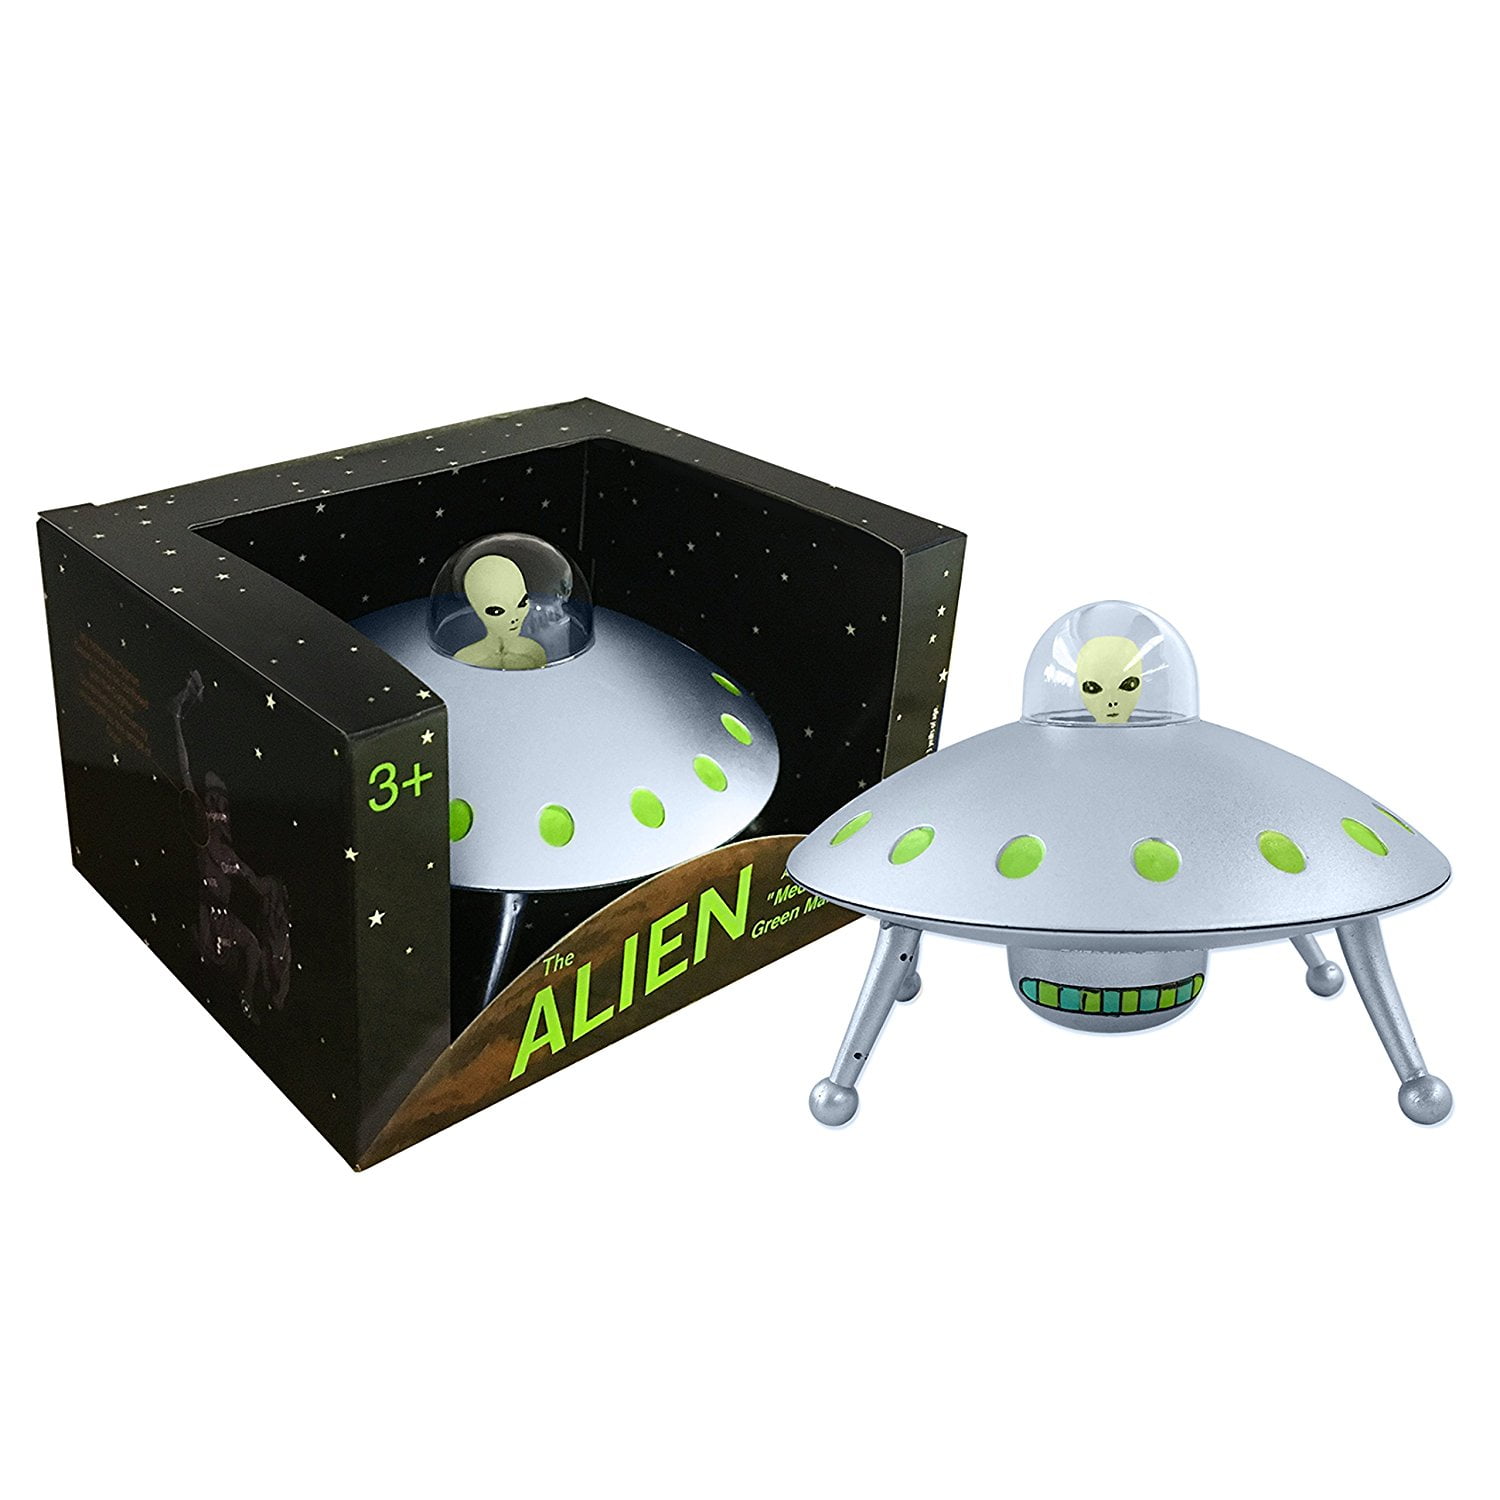 1 Alien Glow in the Dark Alien Figure Miniature Toy FREE SHIPPING 